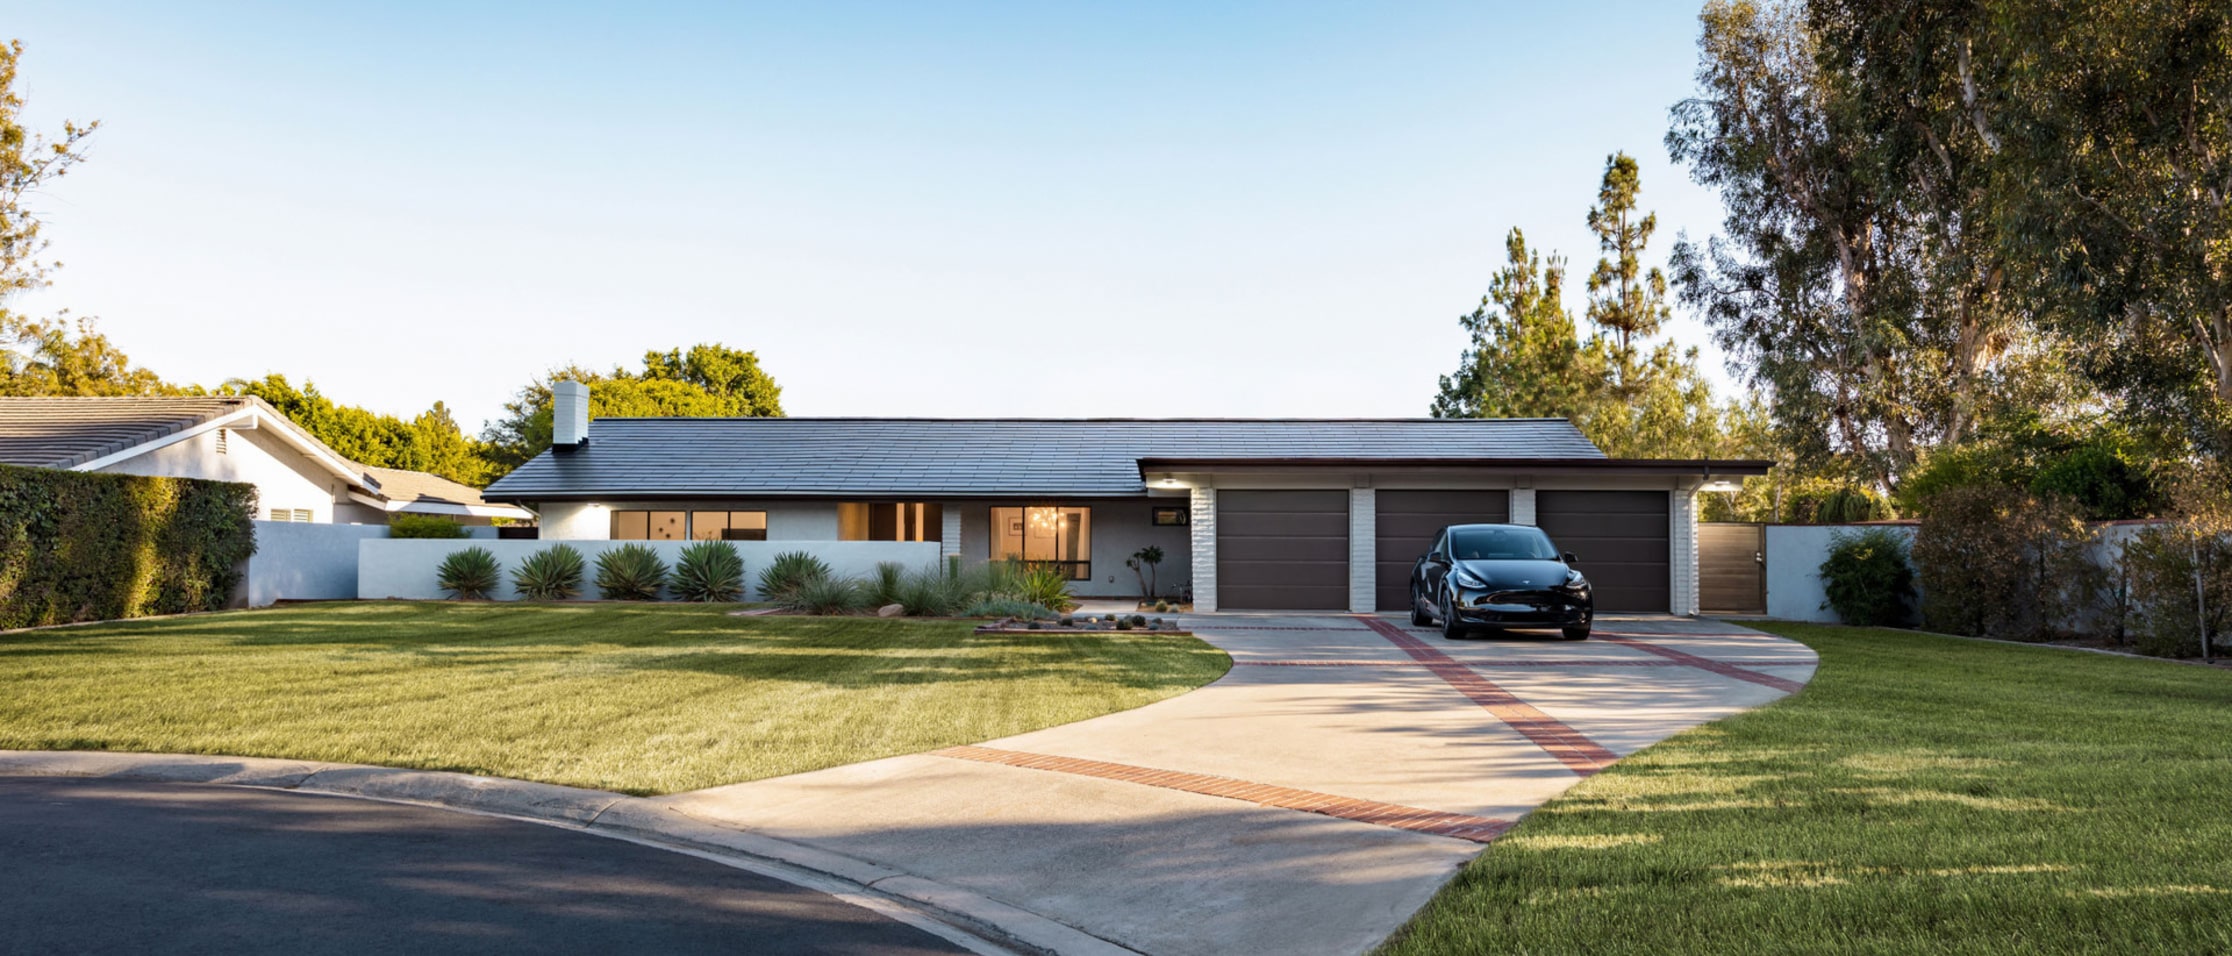 บ้านที่ขับเคลื่อนโดยผลิตภัณฑ์พลังงานของ Tesla